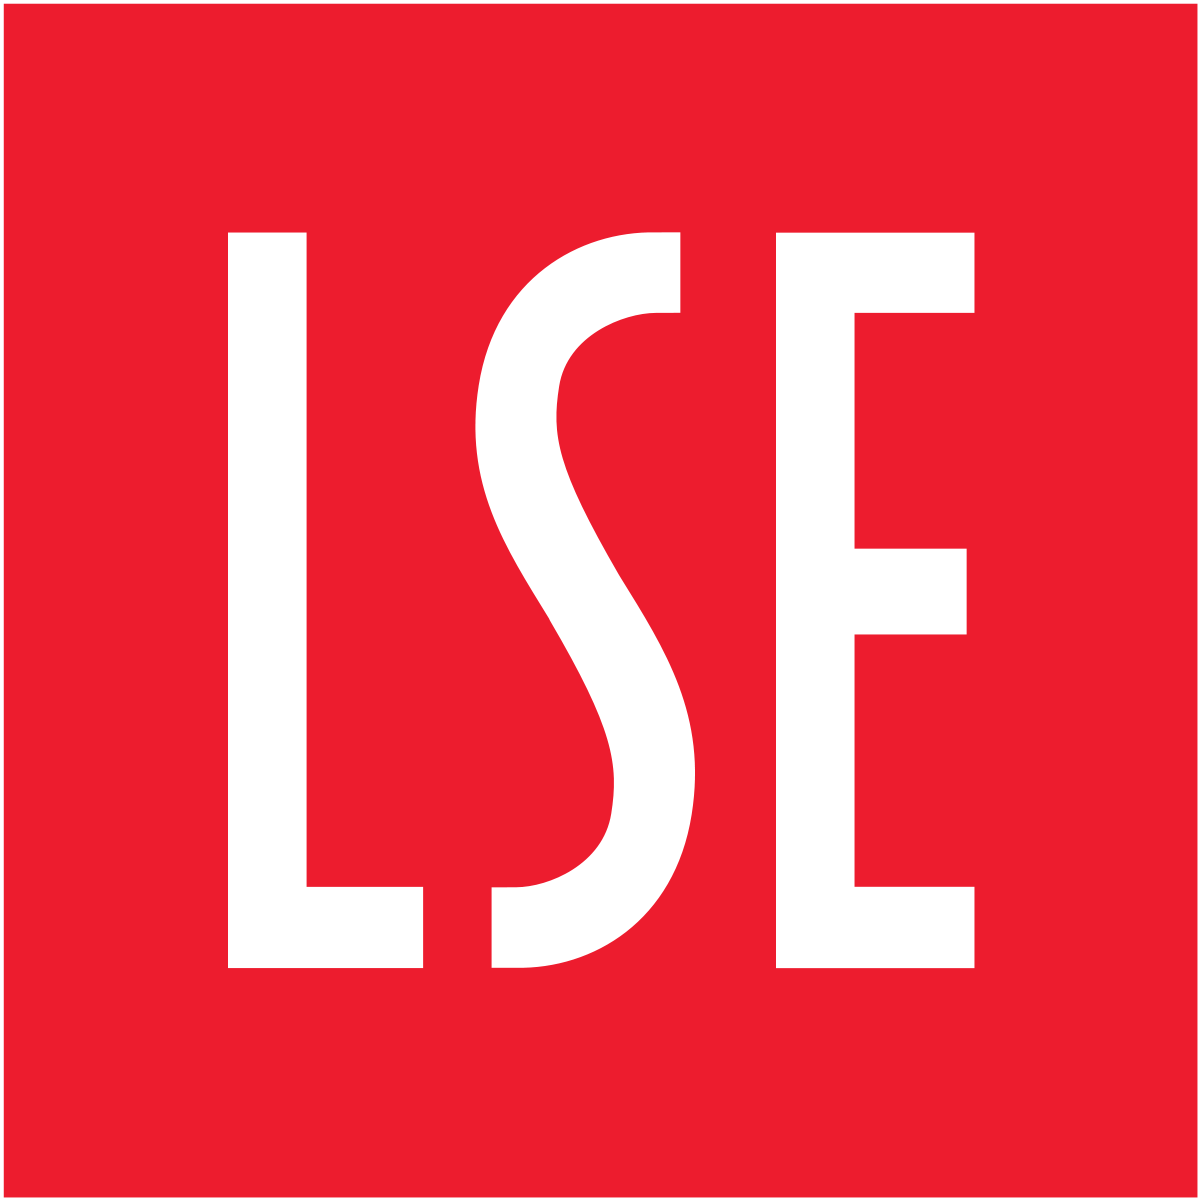 LSE -  London Stock Exchange - Лондонская фондовая биржа